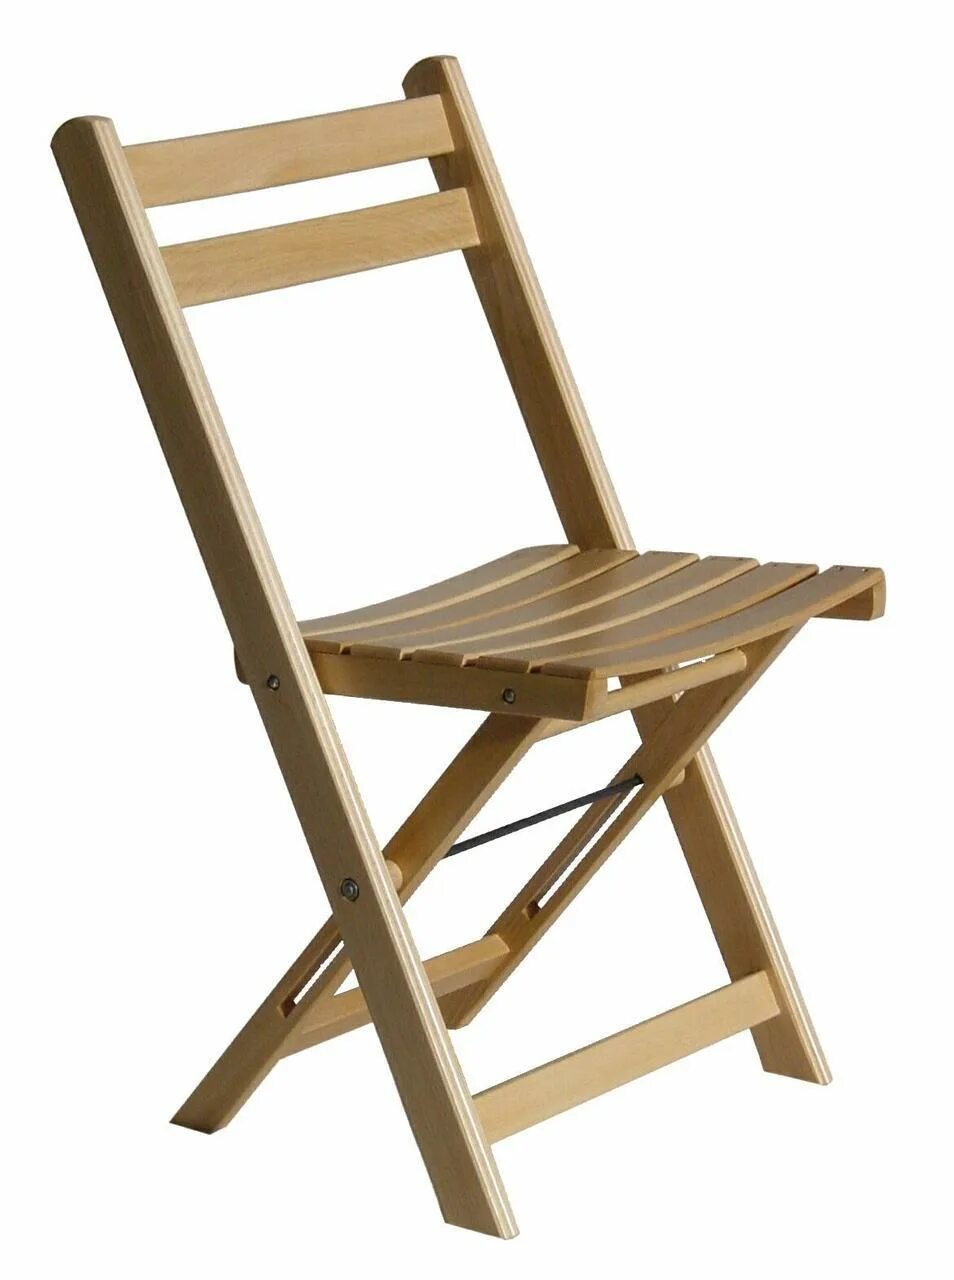 Складной стул для дома. Стул Chair (Чаир) раскладной. Стул садовый раскладной артикул 497191. Стул раскладной деревянный. Стул складной деревянный.